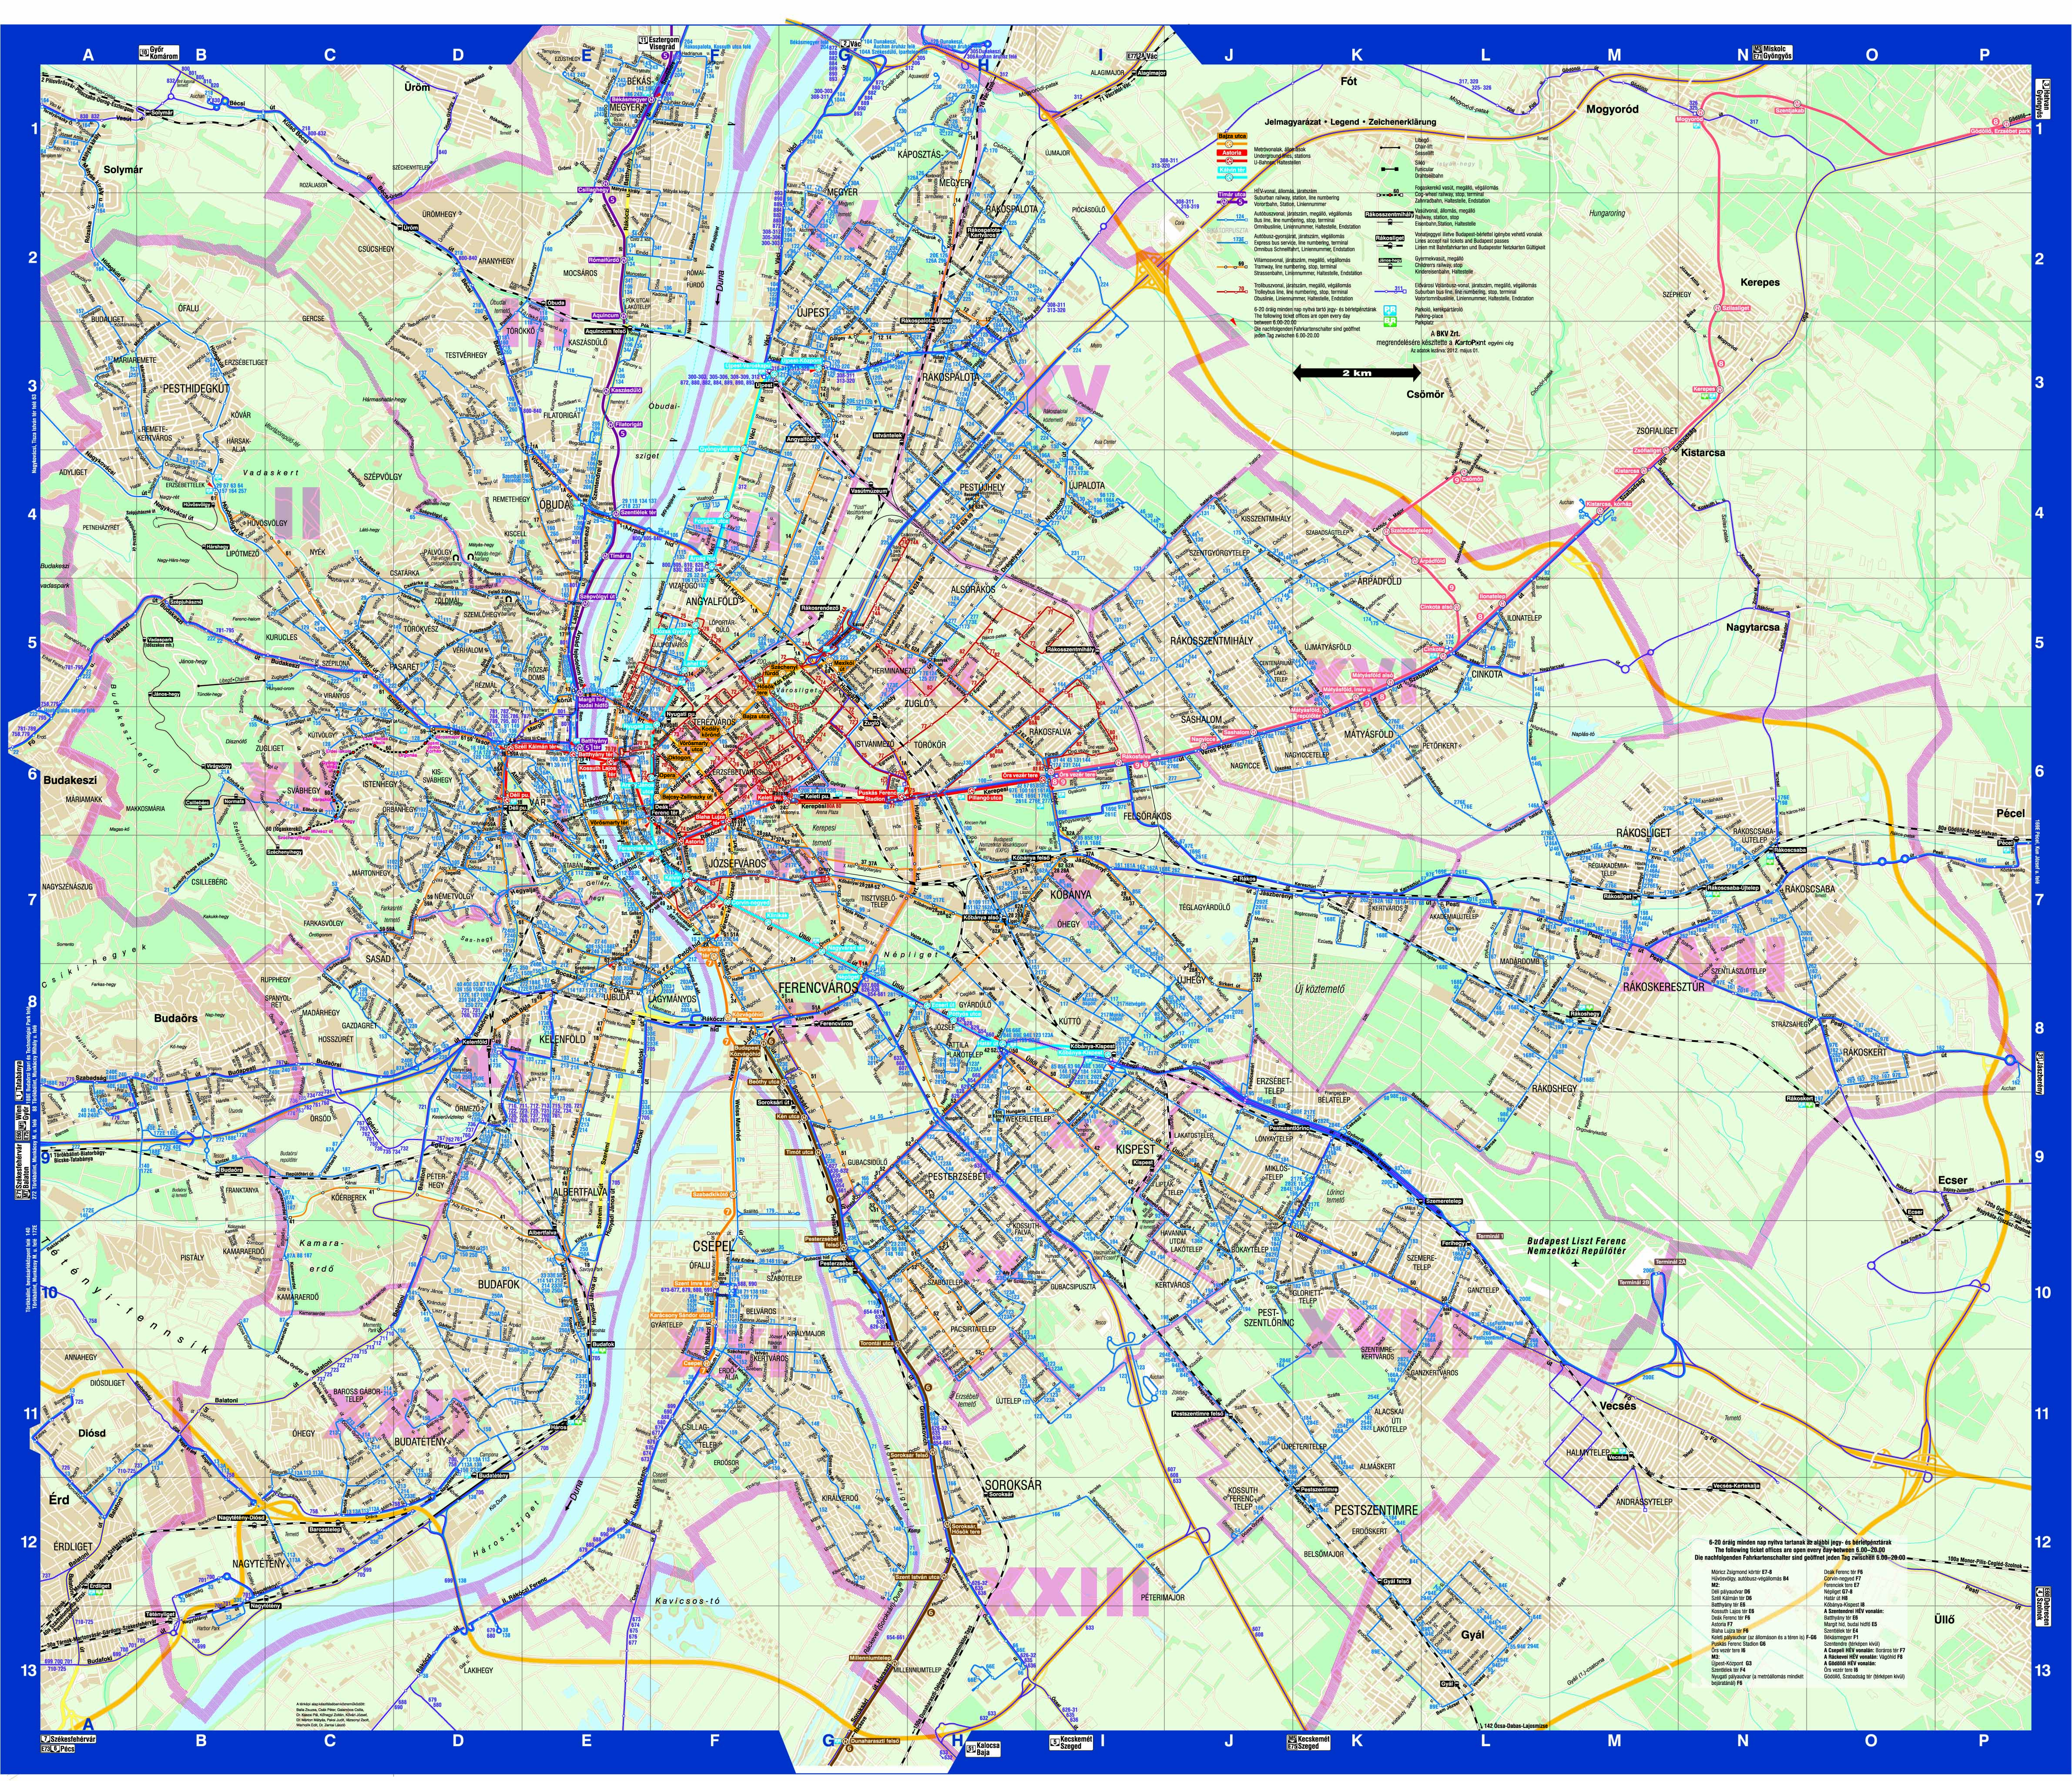 budapest buszjáratok térkép Budapest közösségi közlekekedésének utasterheltsége budapest buszjáratok térkép